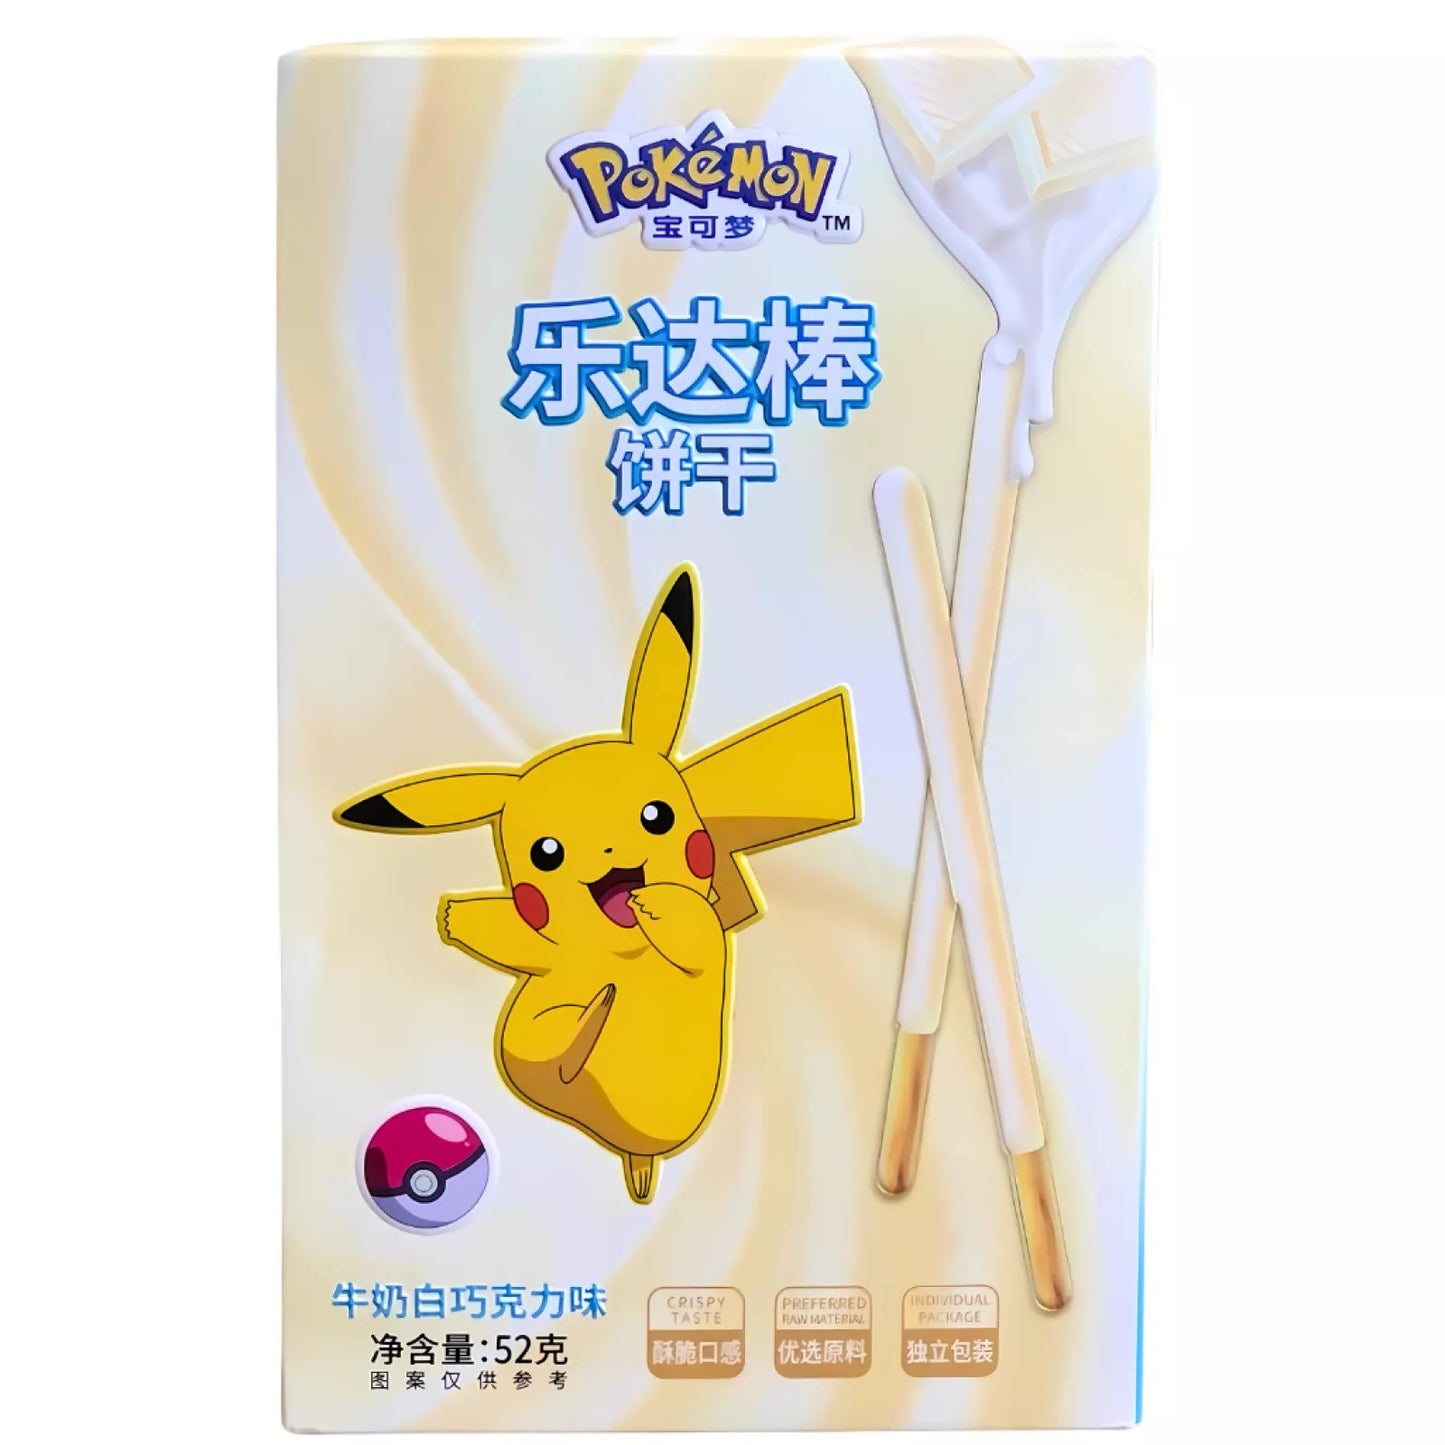 Pokémon Cookie Sticks - White Chocolate